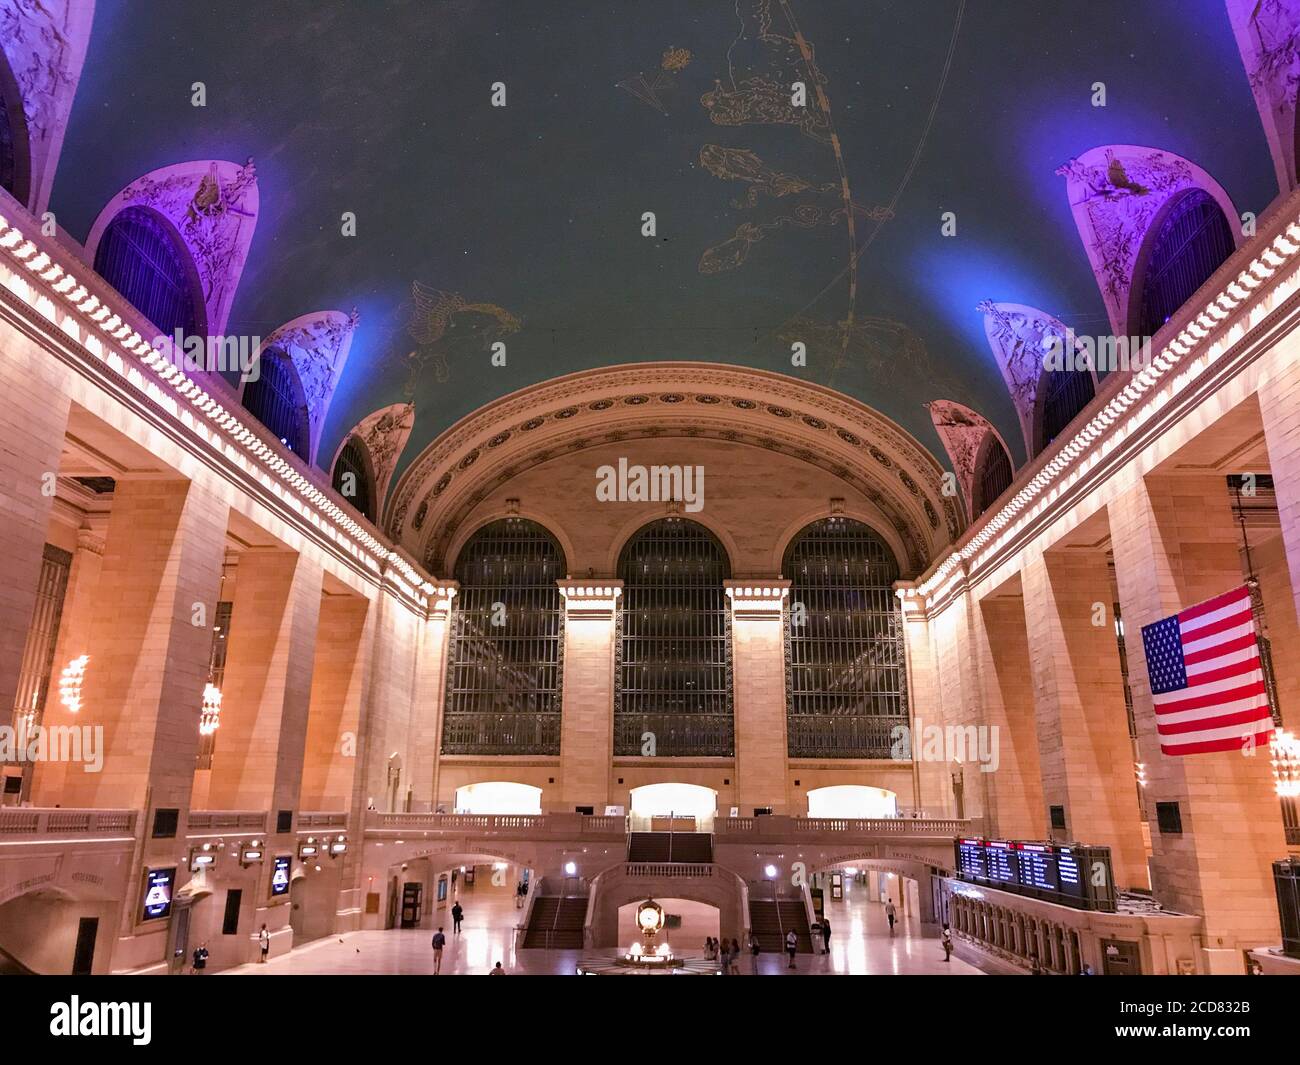 Il Grand Central di New York City è stato illuminato di viola in onore del centenario del suffragio nella Giornata dell’uguaglianza delle donne (26 agosto 2020). Foto Stock